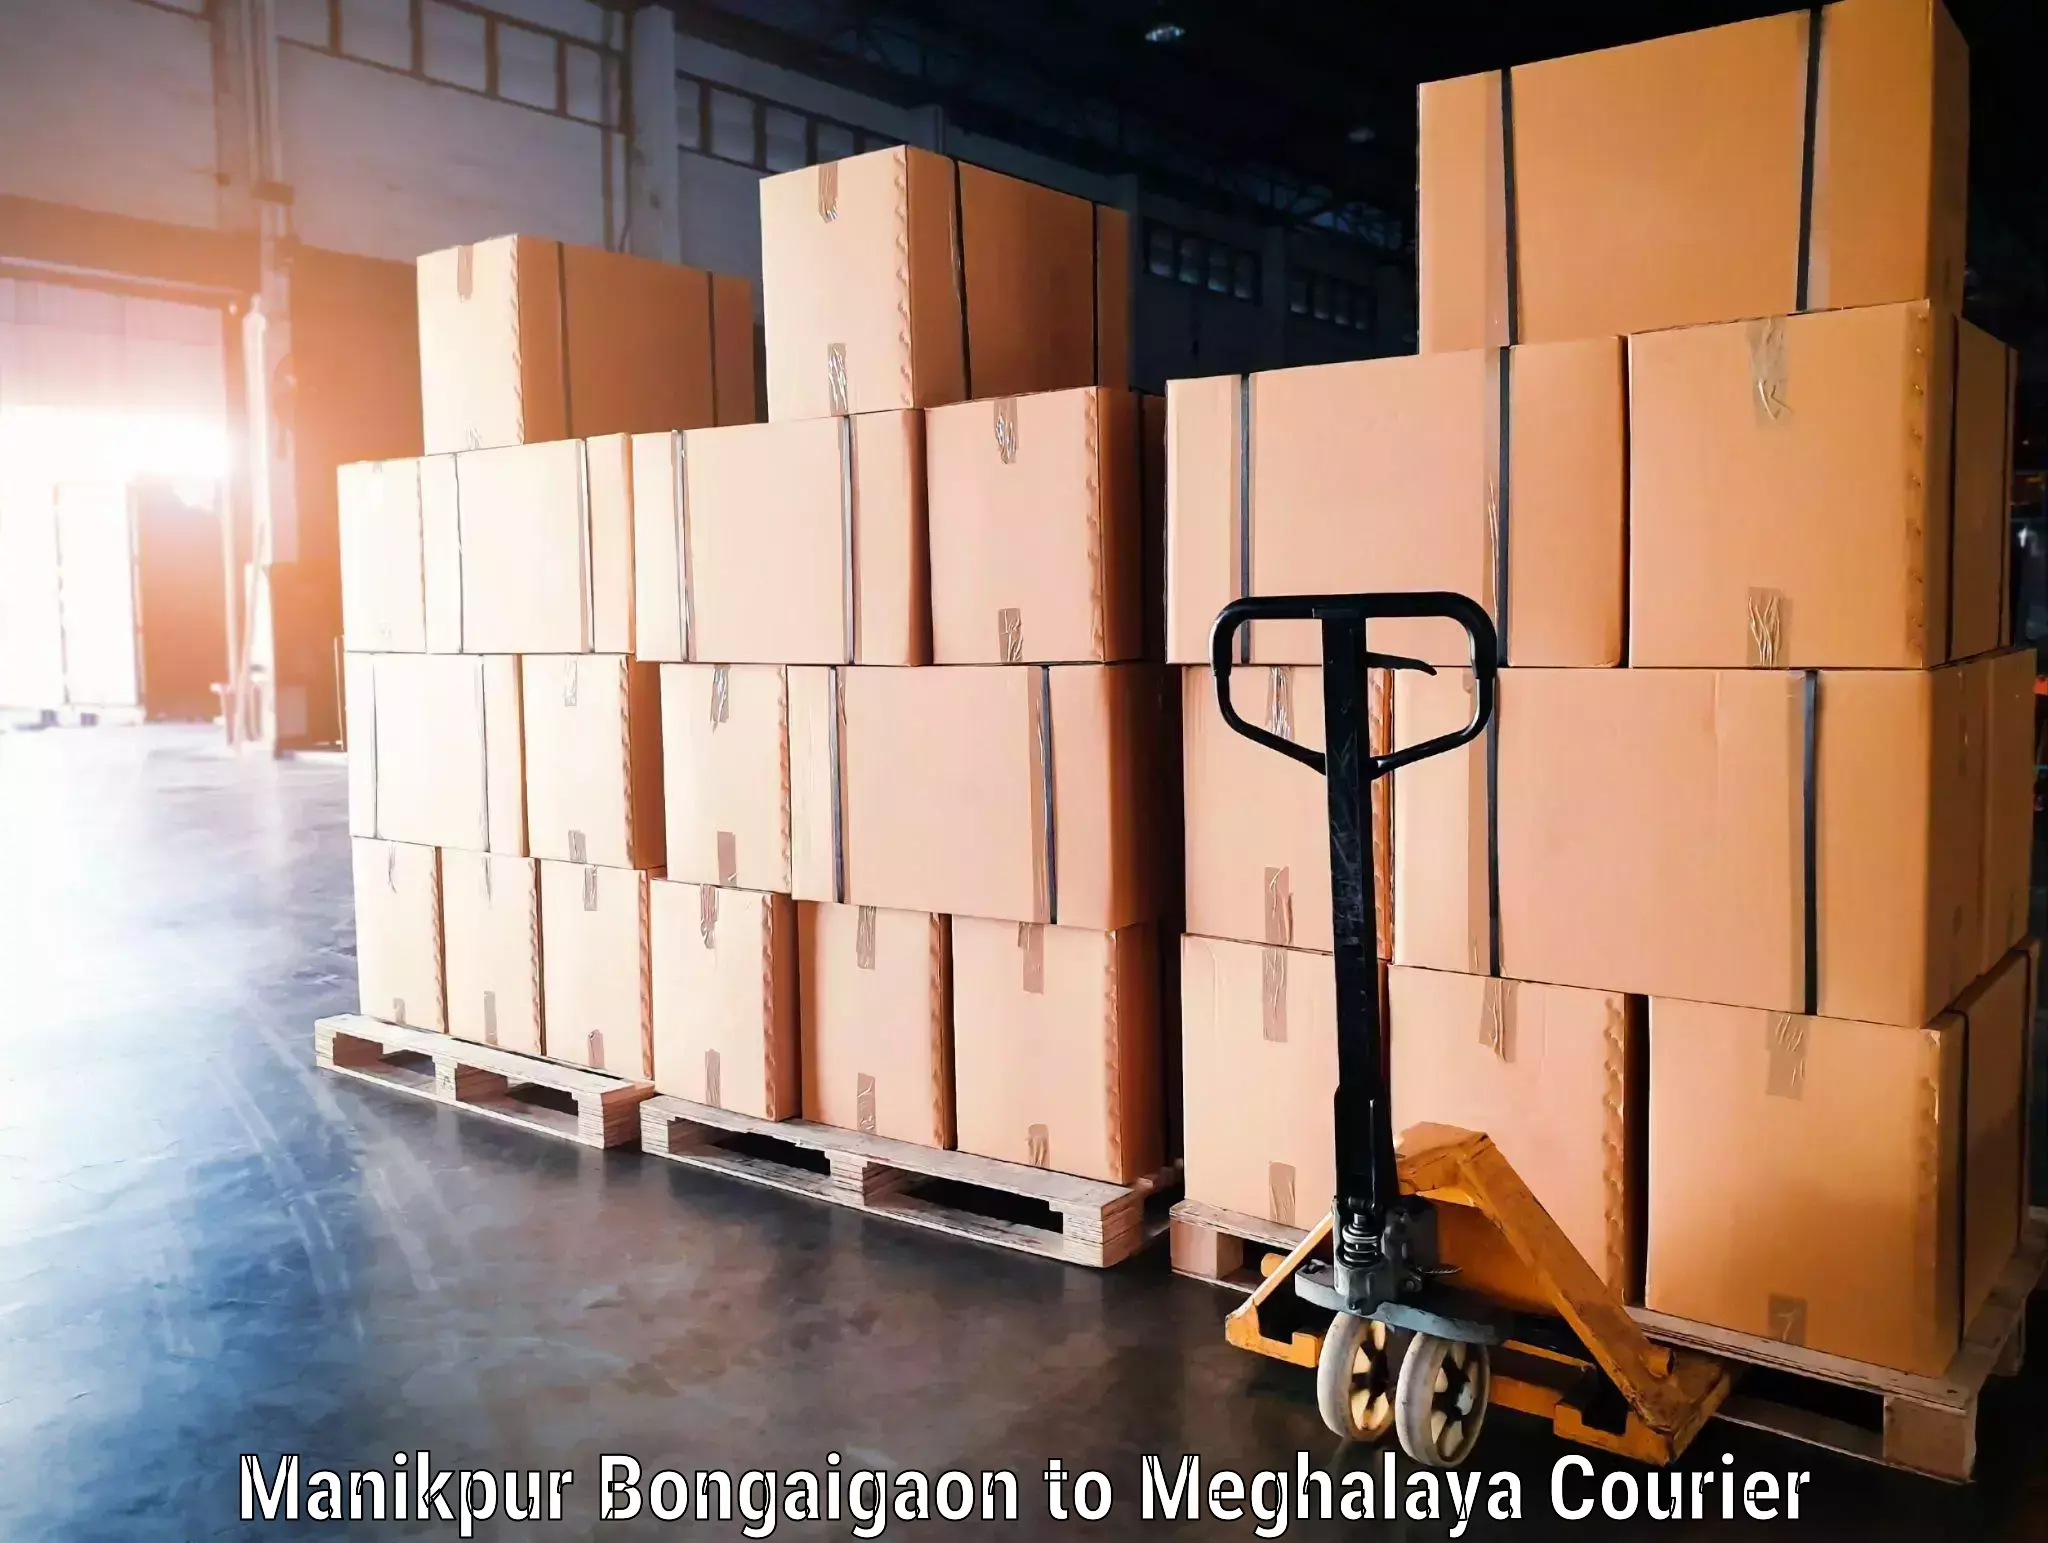 Baggage transport technology Manikpur Bongaigaon to Meghalaya